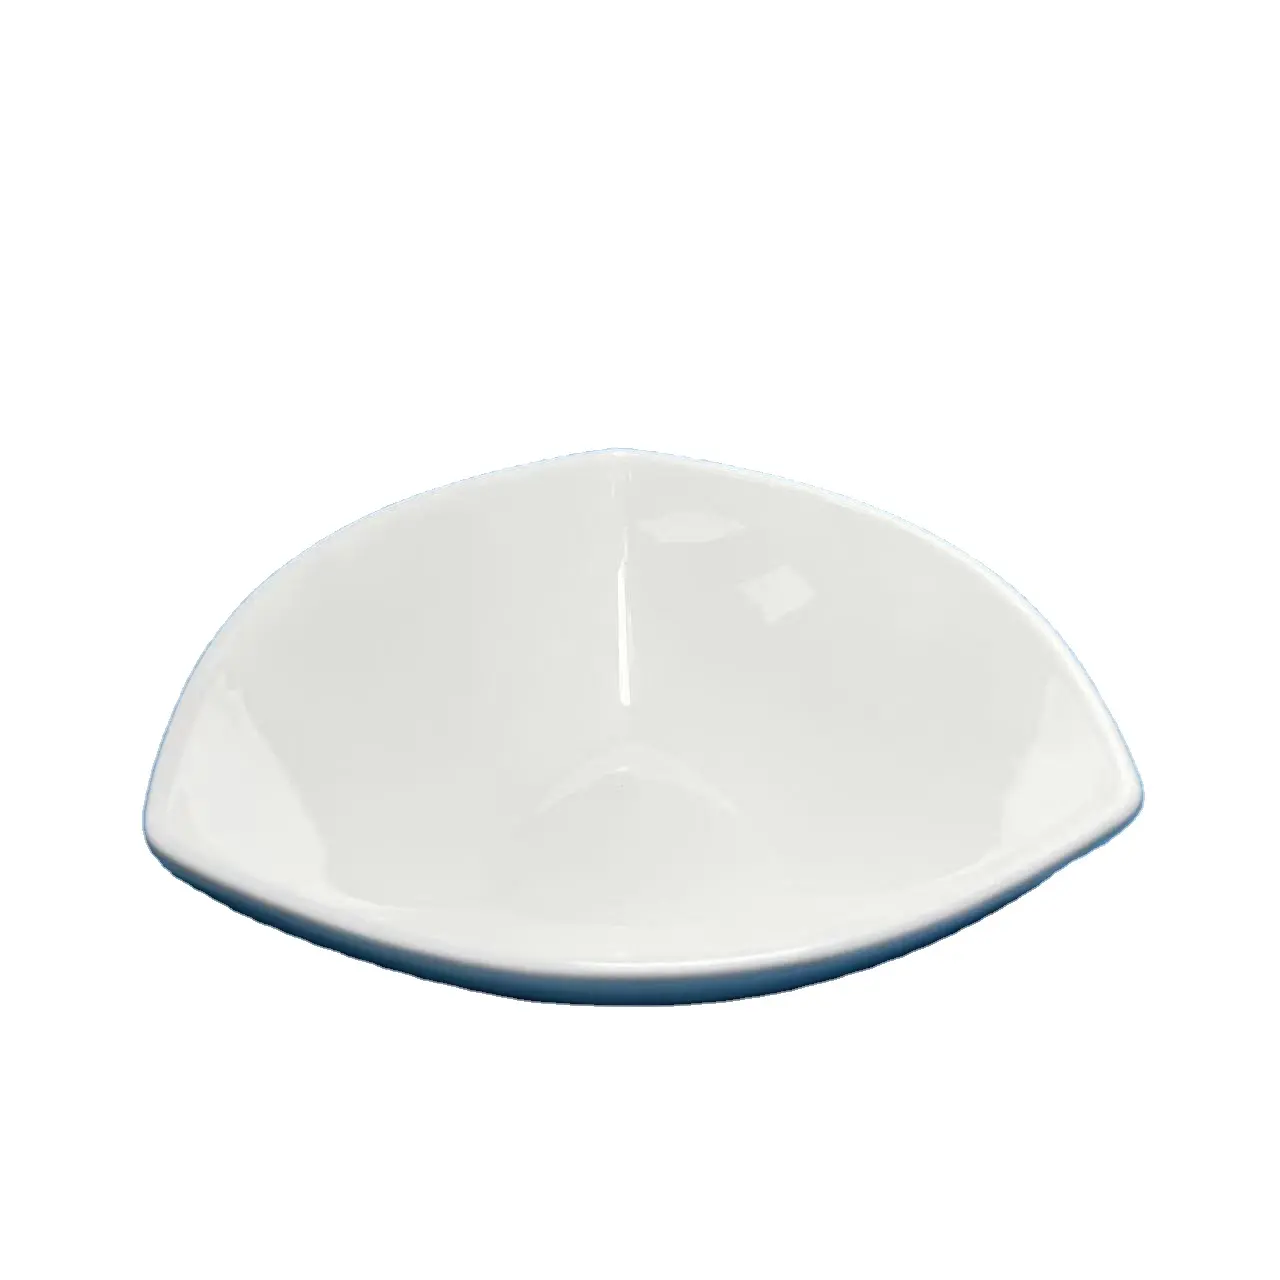 Grosir peralatan makan keramik suhu tinggi mangkuk buah Salad segitiga piring keramik putih